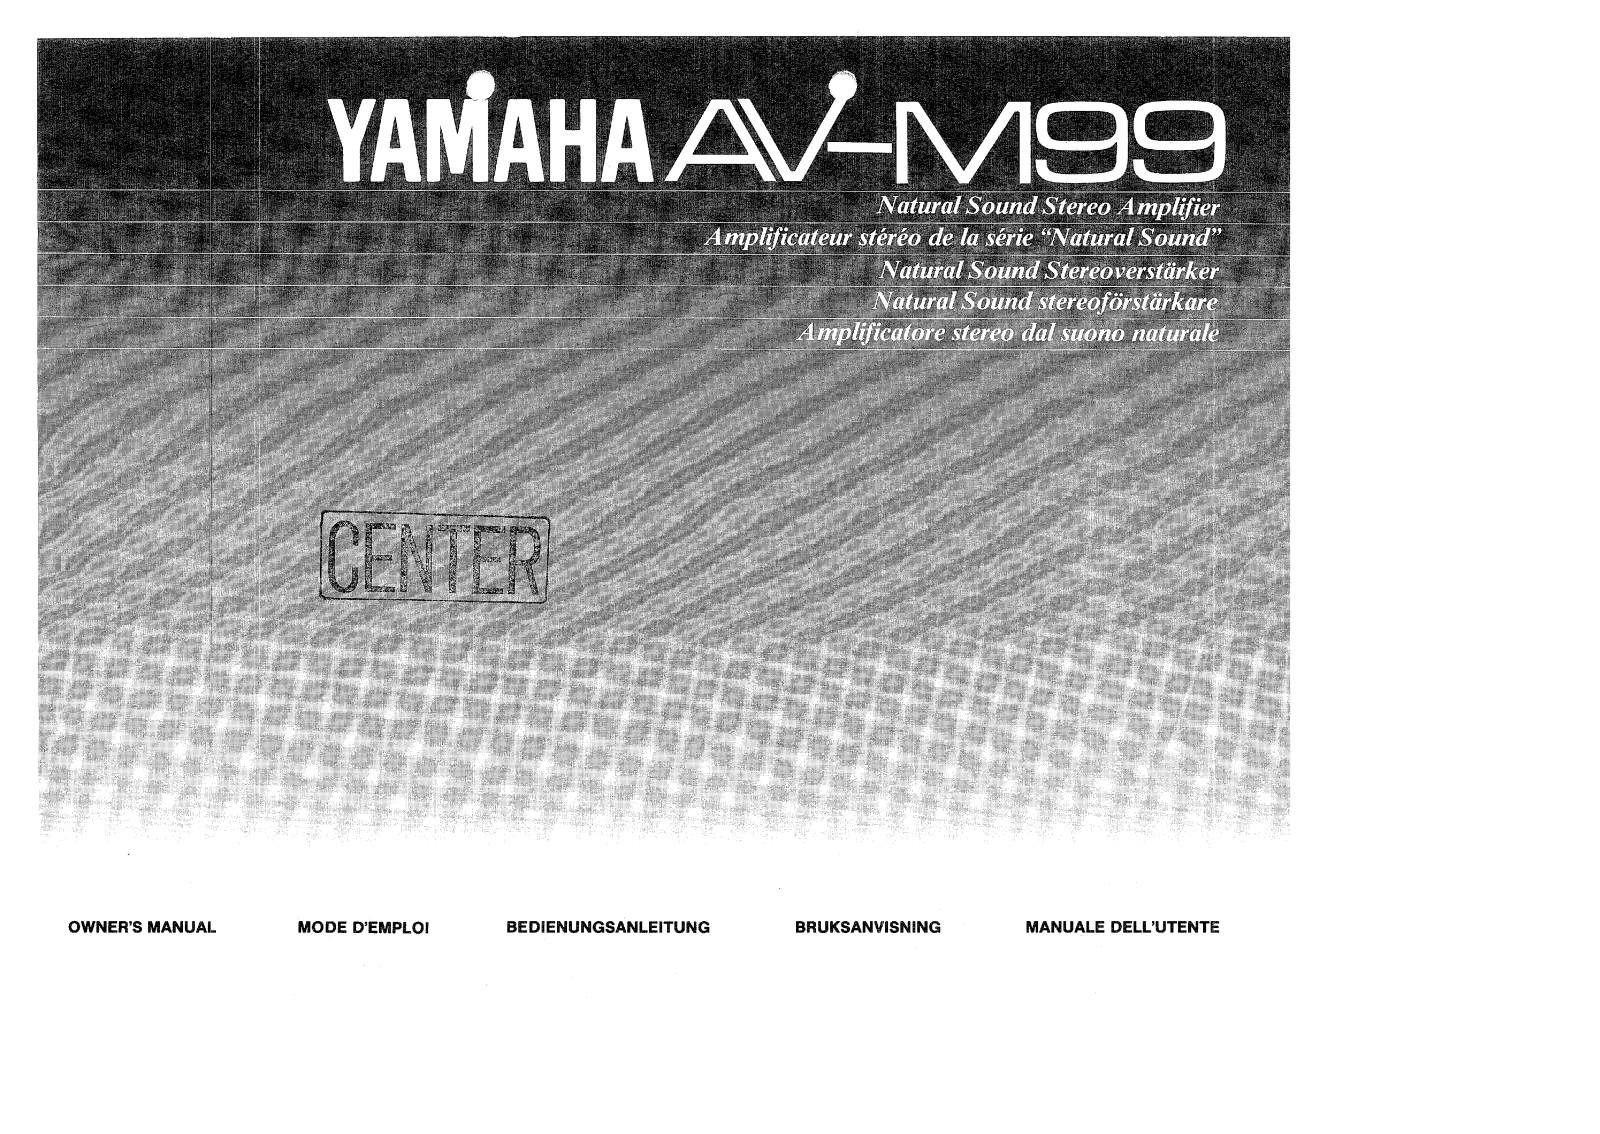 Yamaha AV-M99 User Manual